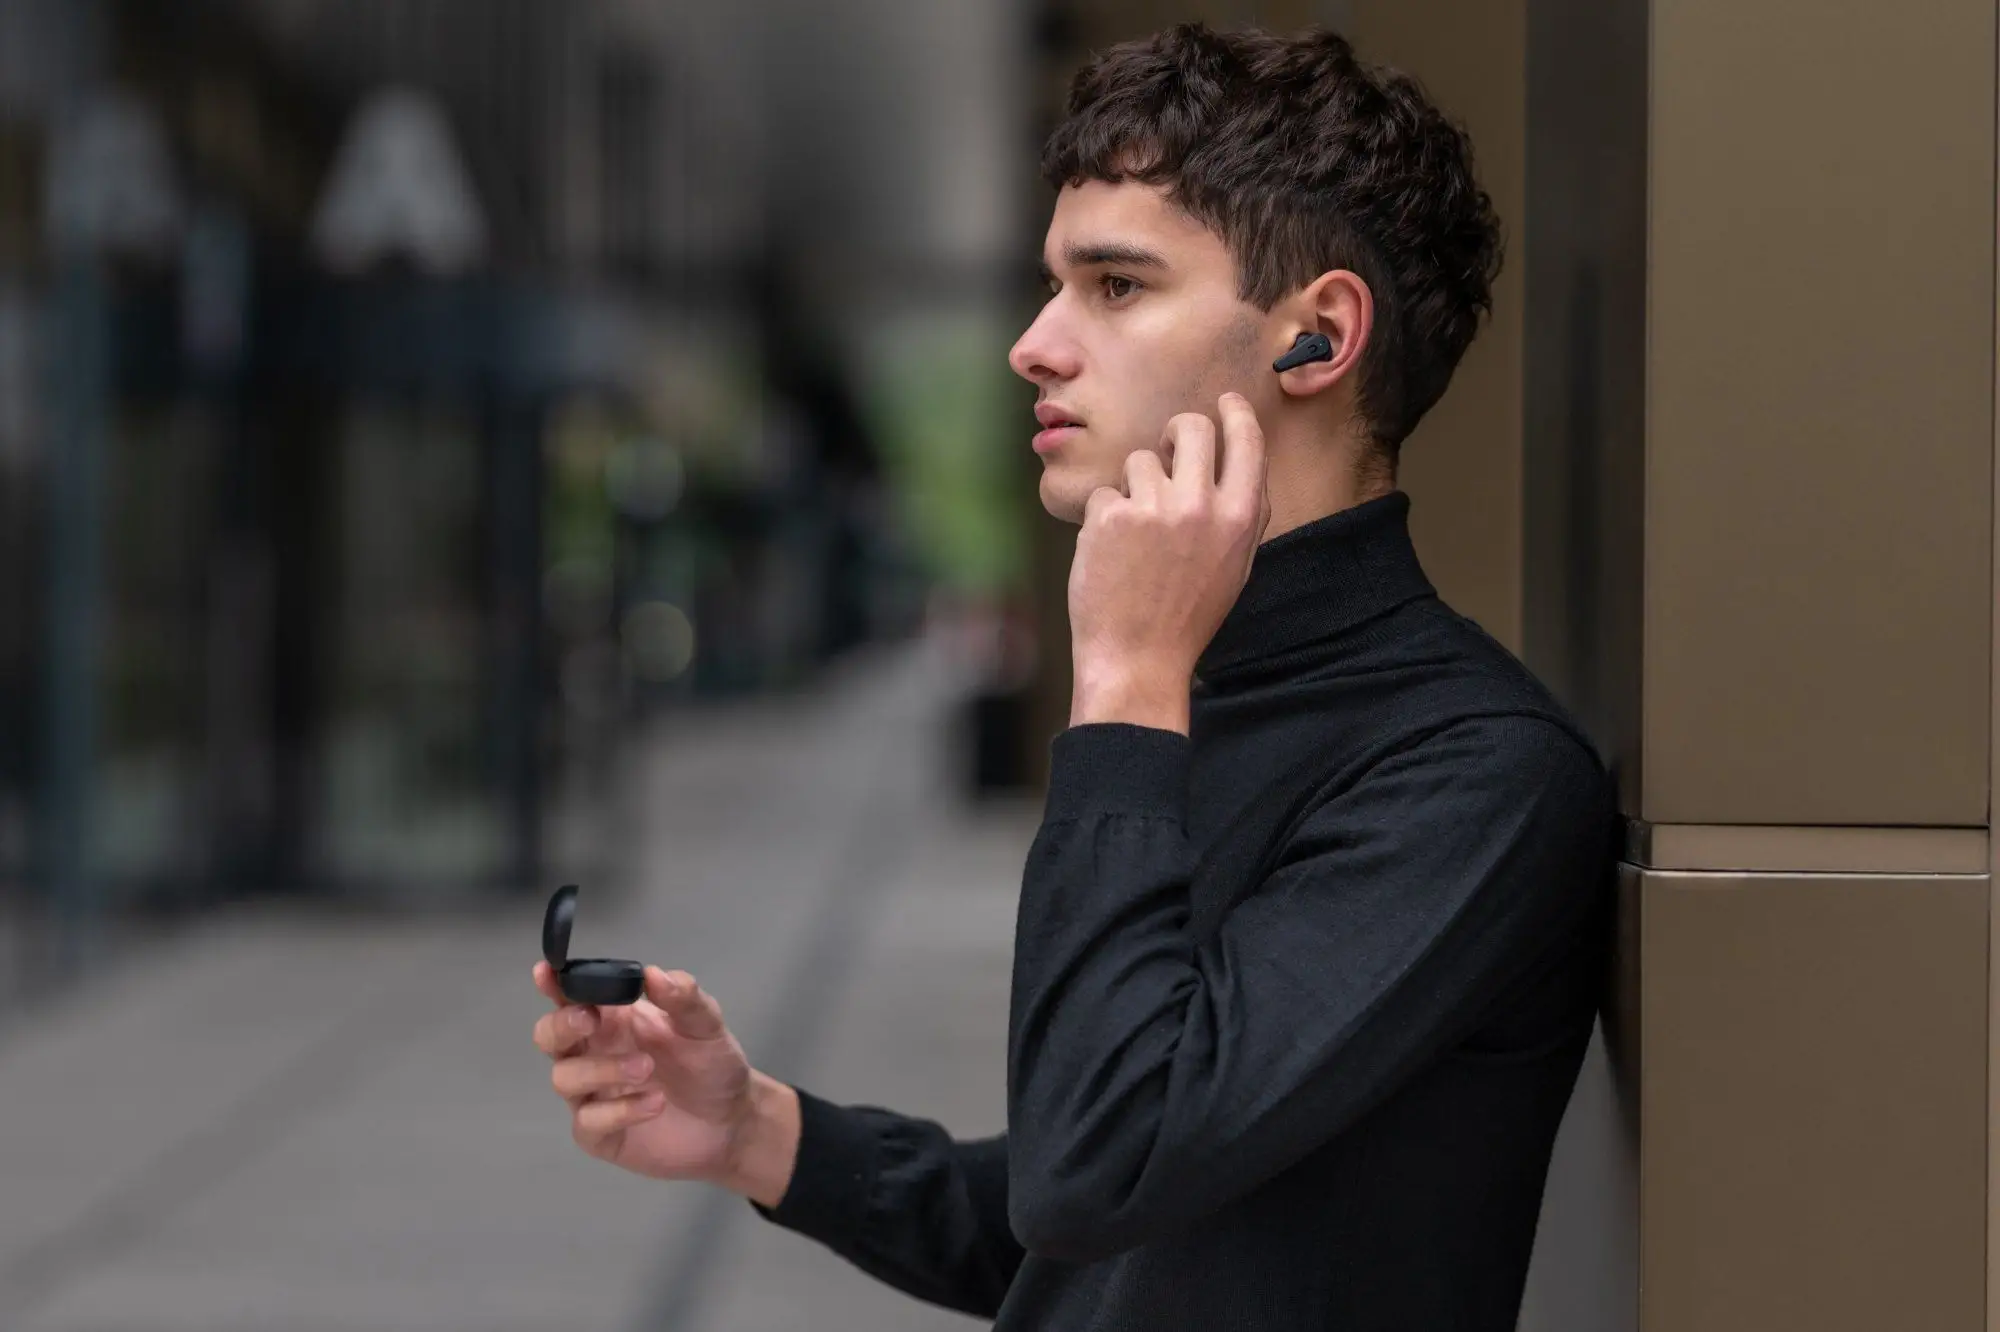 Bezdrátová In-Ear sluchátka Niceboy Pins 3 s podporou Bluetooth 5.1 jsou navržené tak, aby vás nijak neomezovaly při pohybu či při jiných aktivitách.